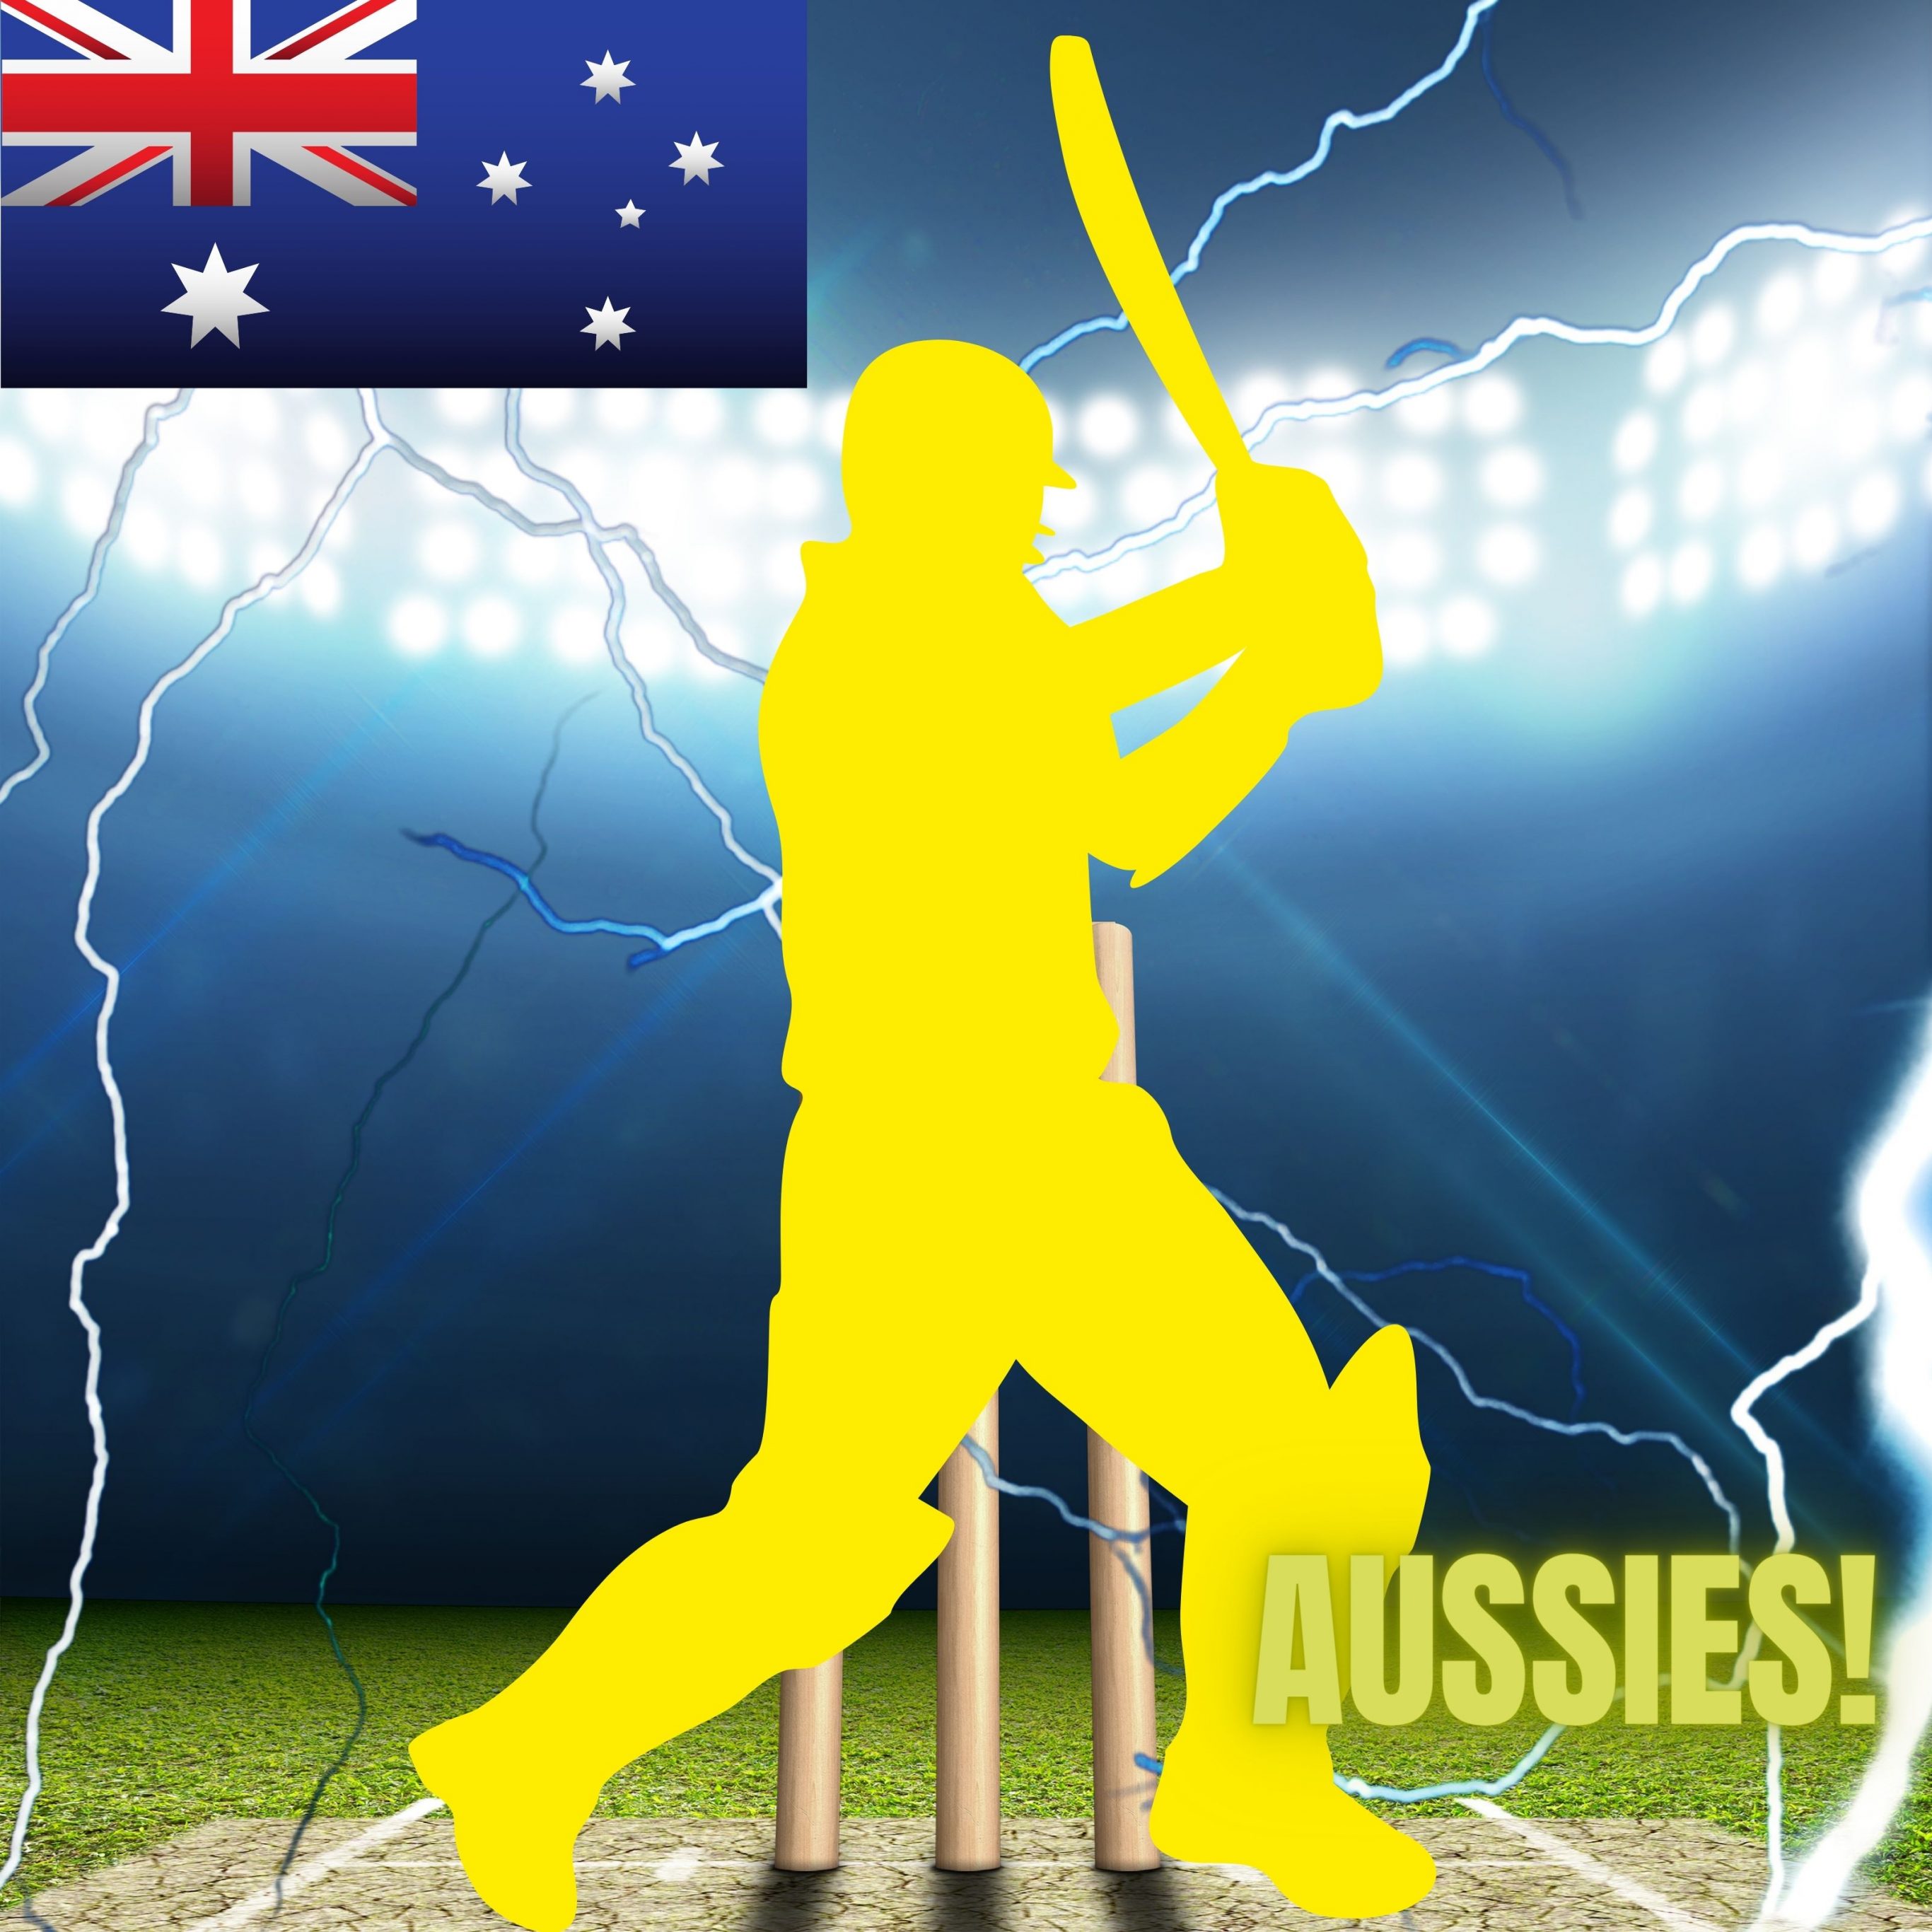 iPad Pro 12.9 wallpapers Australia Cricket Stadium iPad Wallpaper